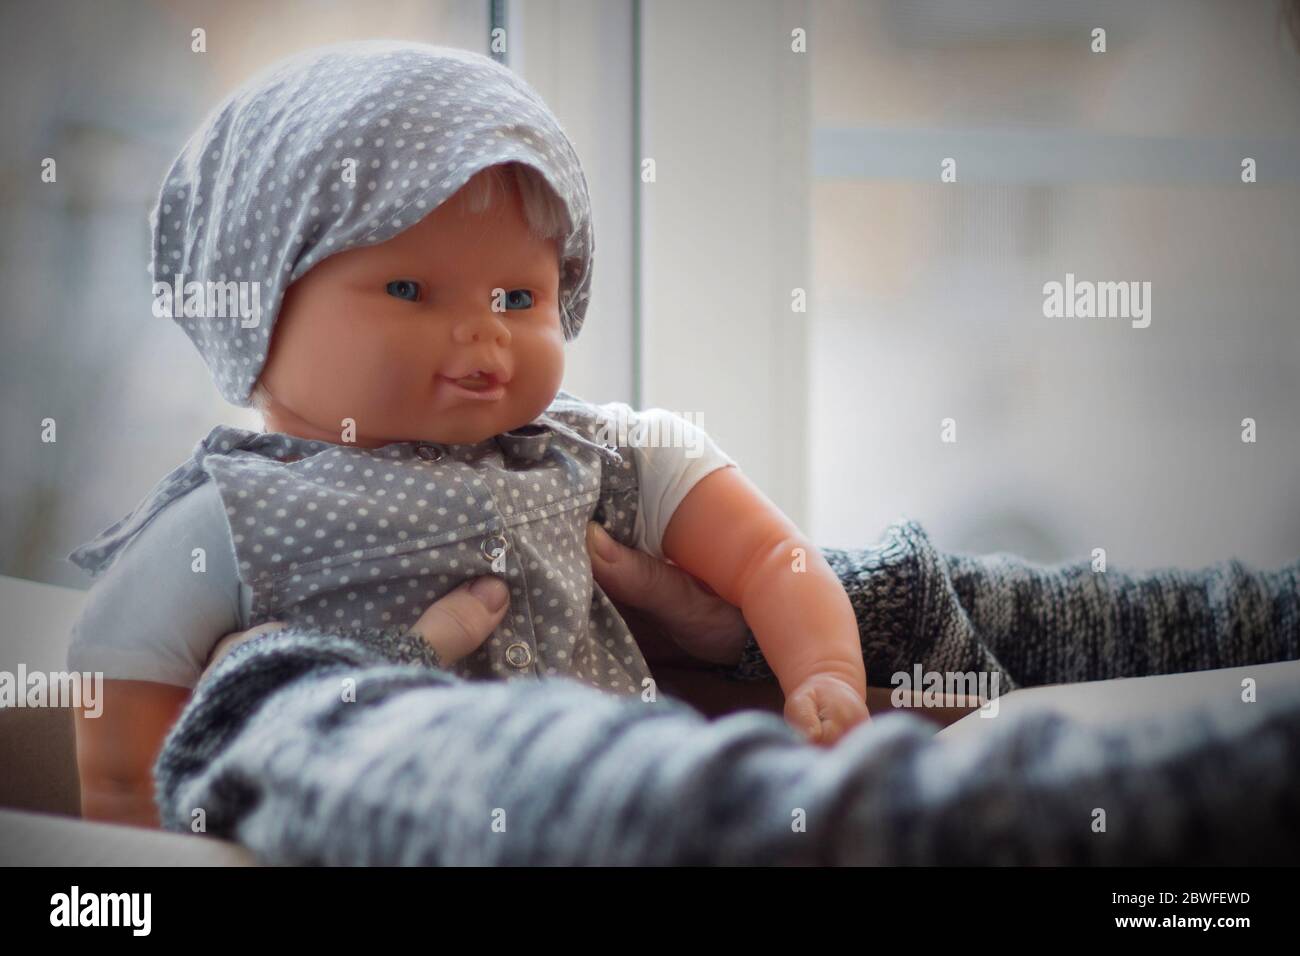 Die Hände des Mädchens nehmen die Puppe aus der Kiste. Puppe in einem grauen Sonnenkleid und Schal auf einem hellen Hintergrund. Stockfoto